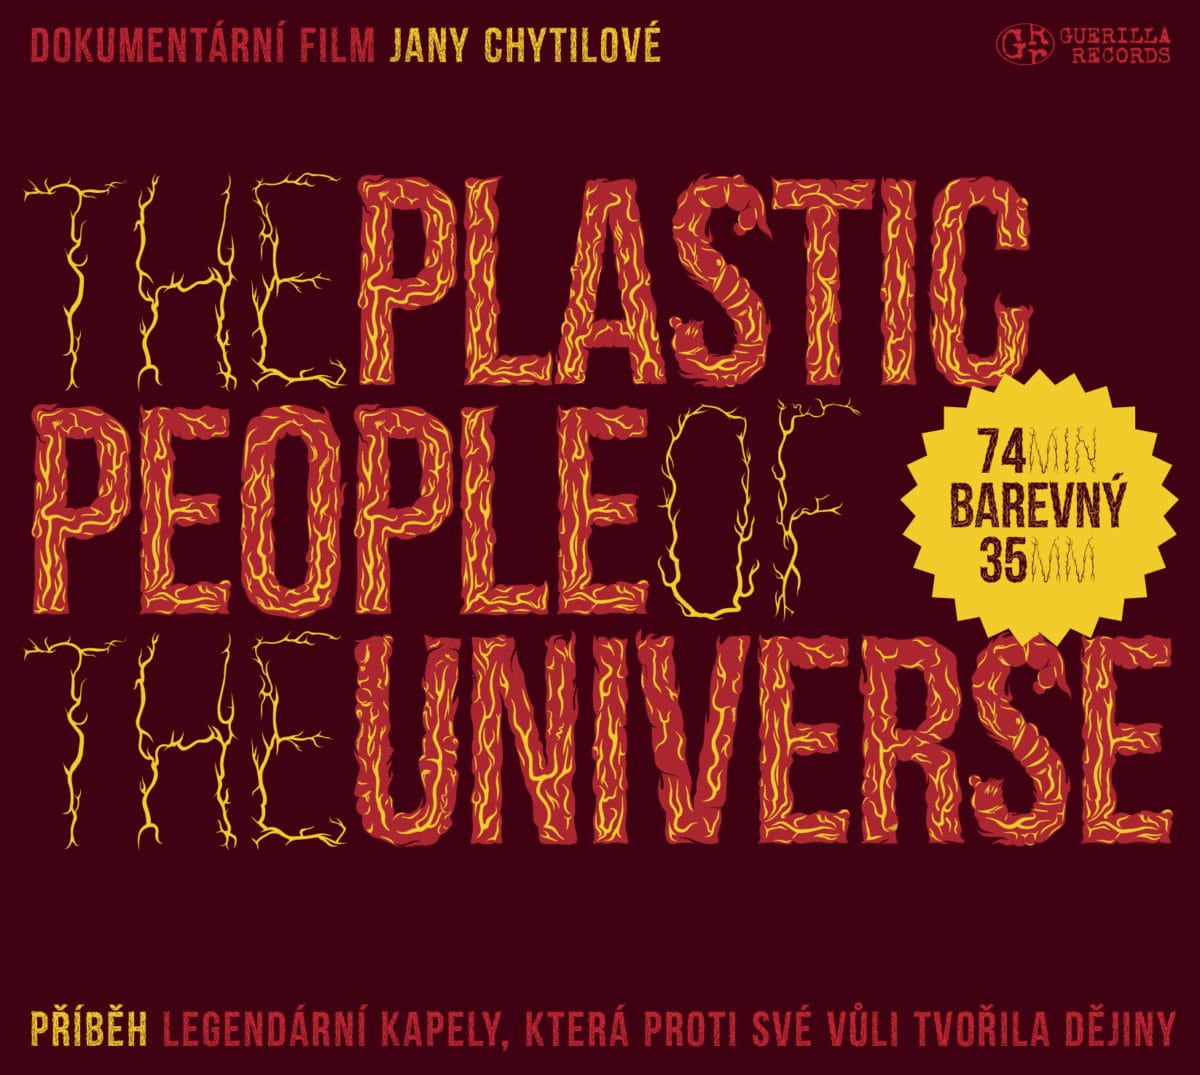 The Plastic People Of The Universe/dokumentární film Jany Chytilové